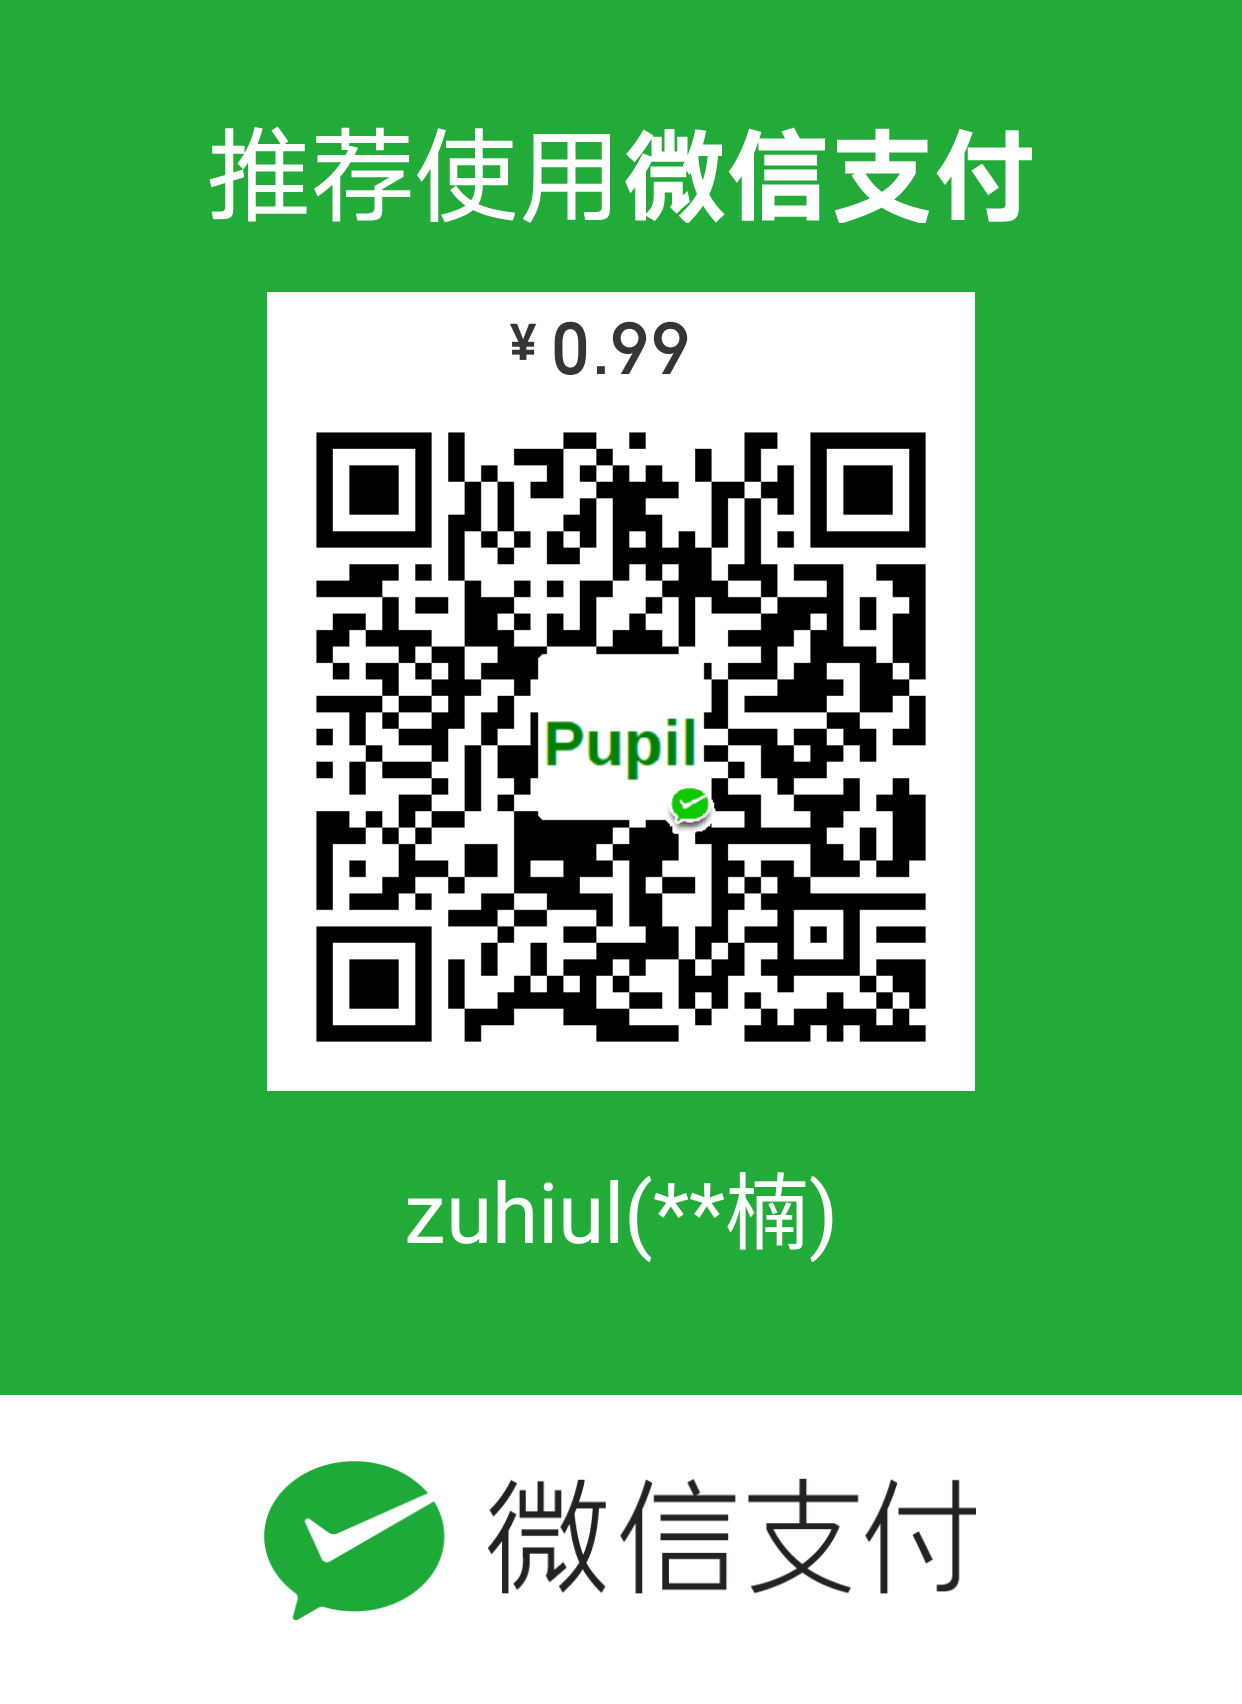 zuhiul WeChat Pay